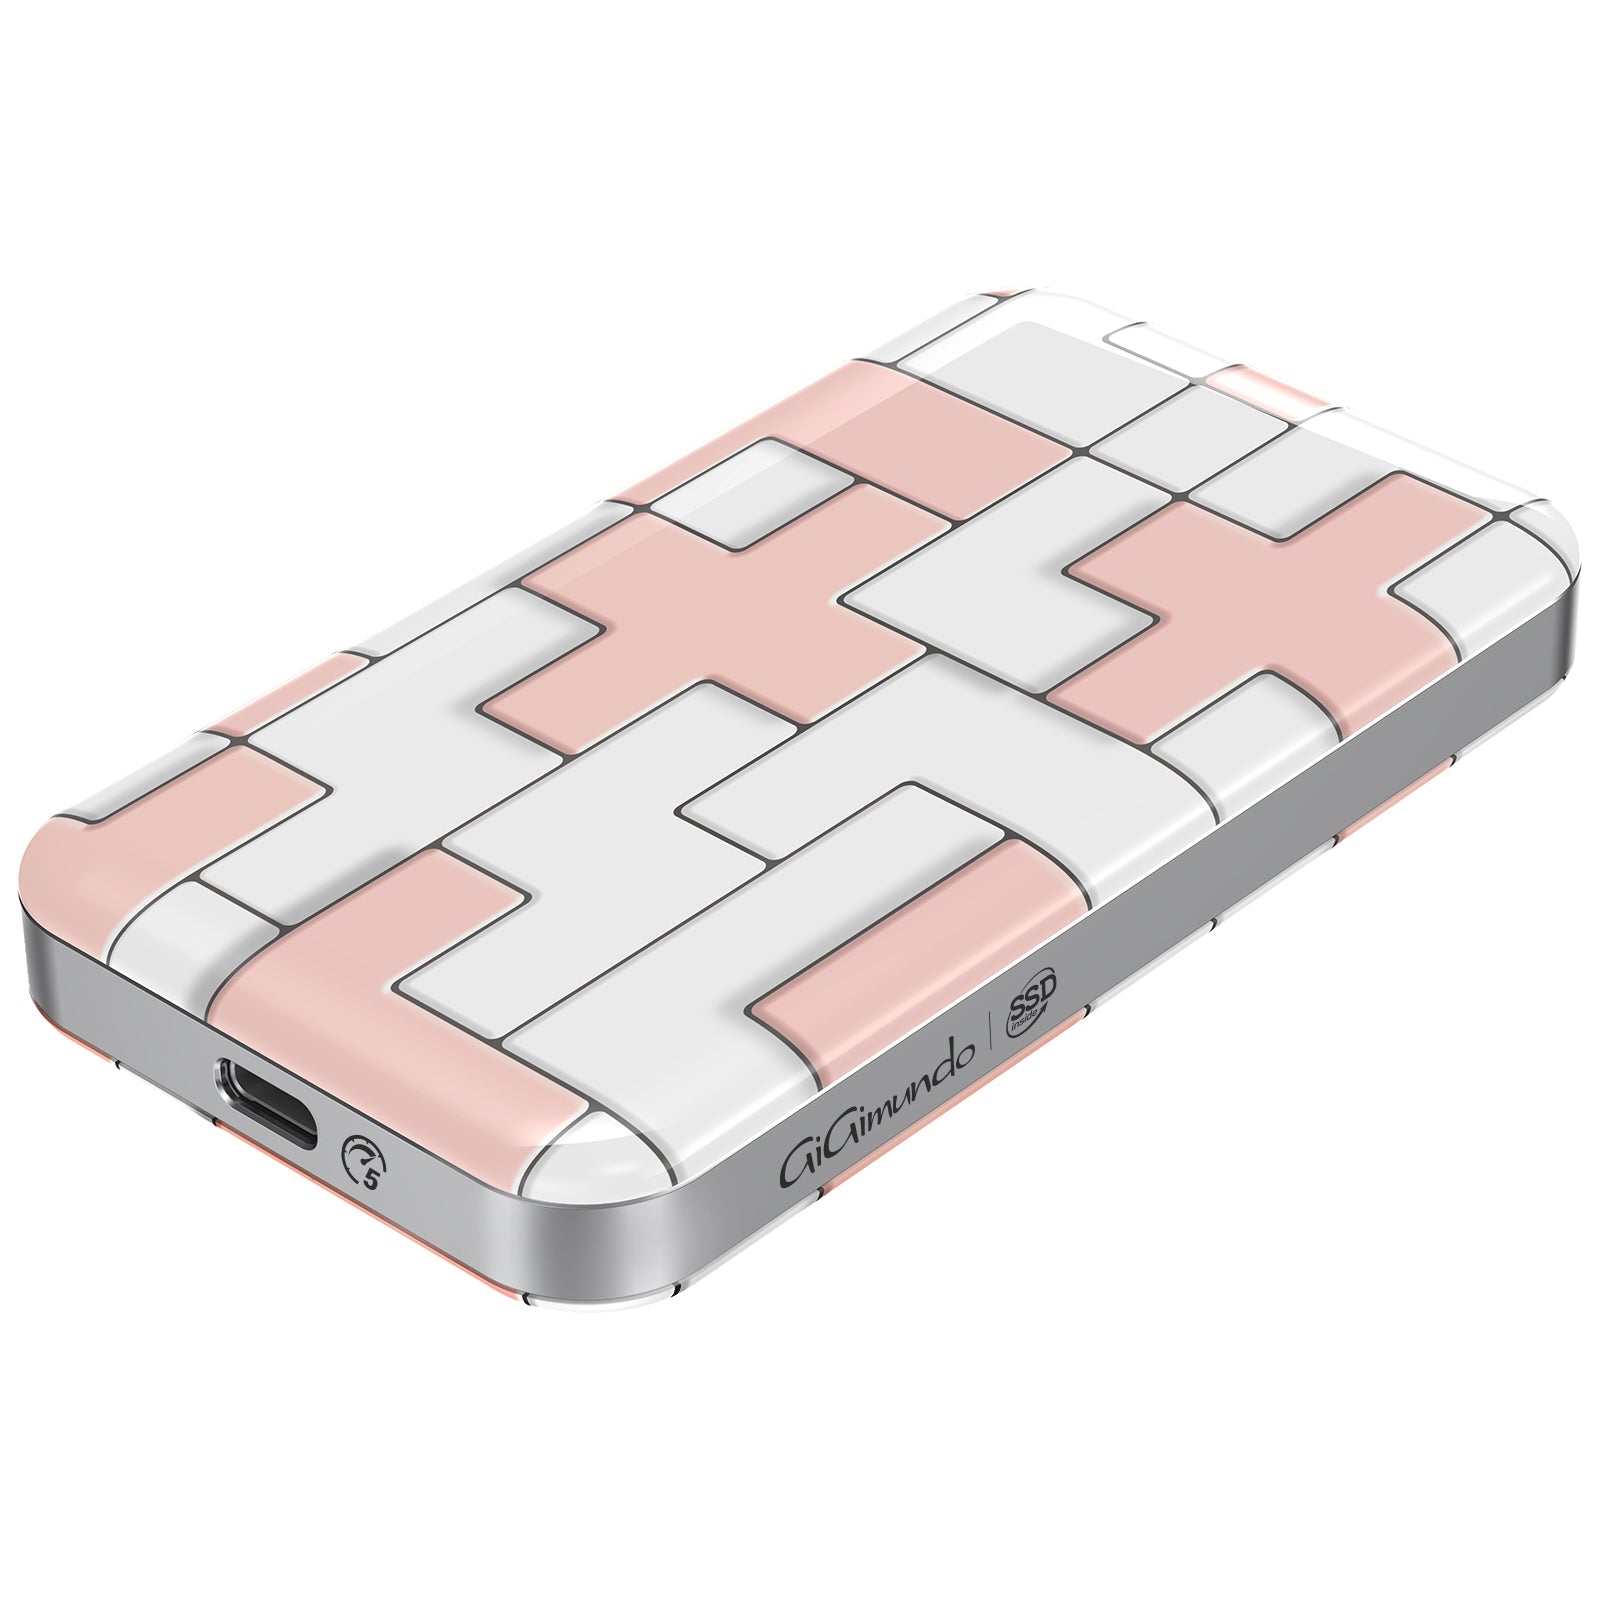 GiGimundo Tetris External SSD  USB 3.1 Gen 2